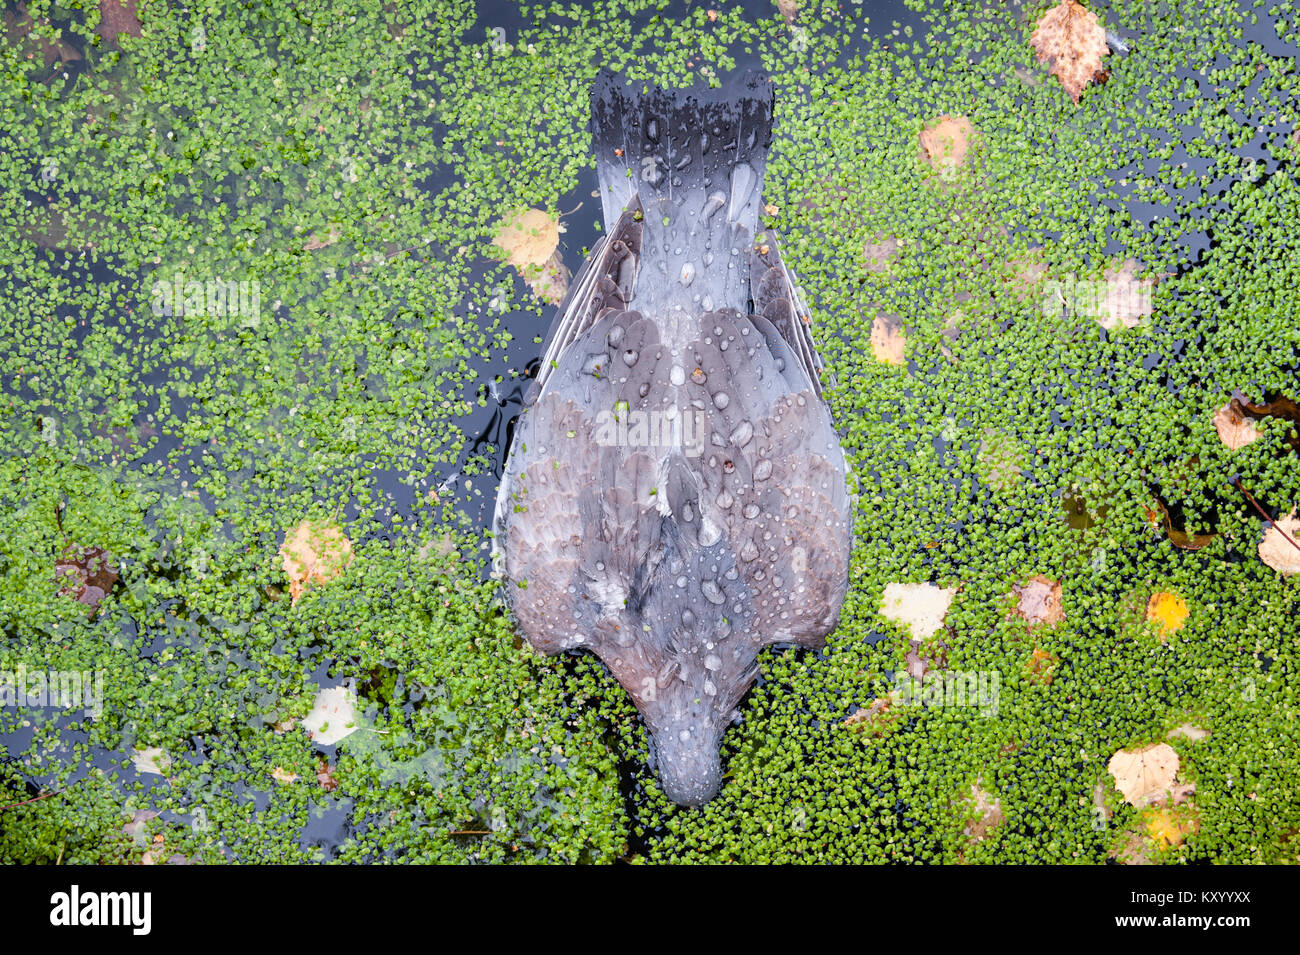 Regno Unito. Un morto woodpigeon galleggianti a faccia in giù sulla superficie di uno stagno, tra lenticchia d'acqua e caduta foglie Foto Stock